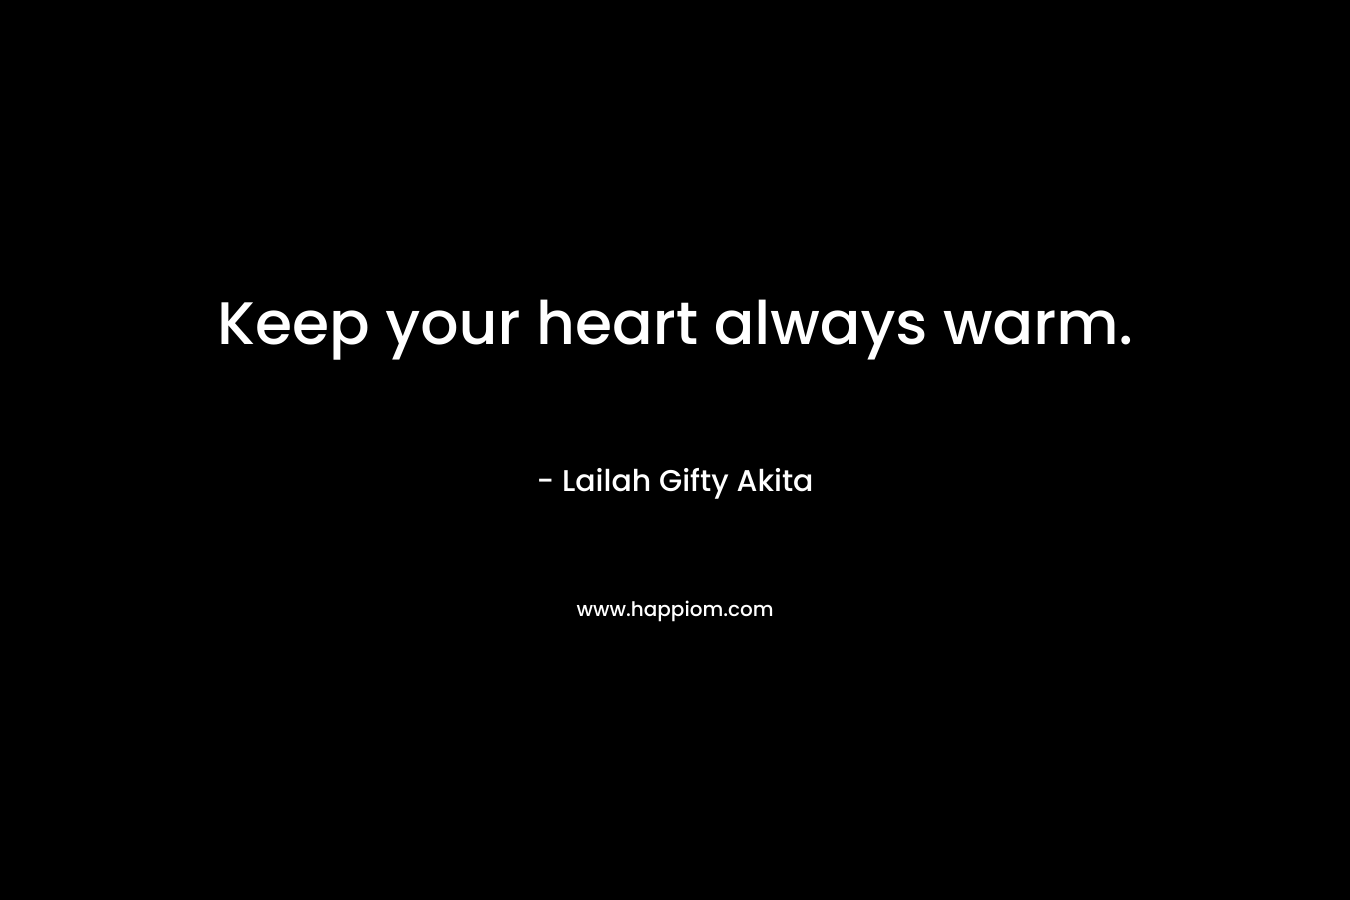 Keep your heart always warm.